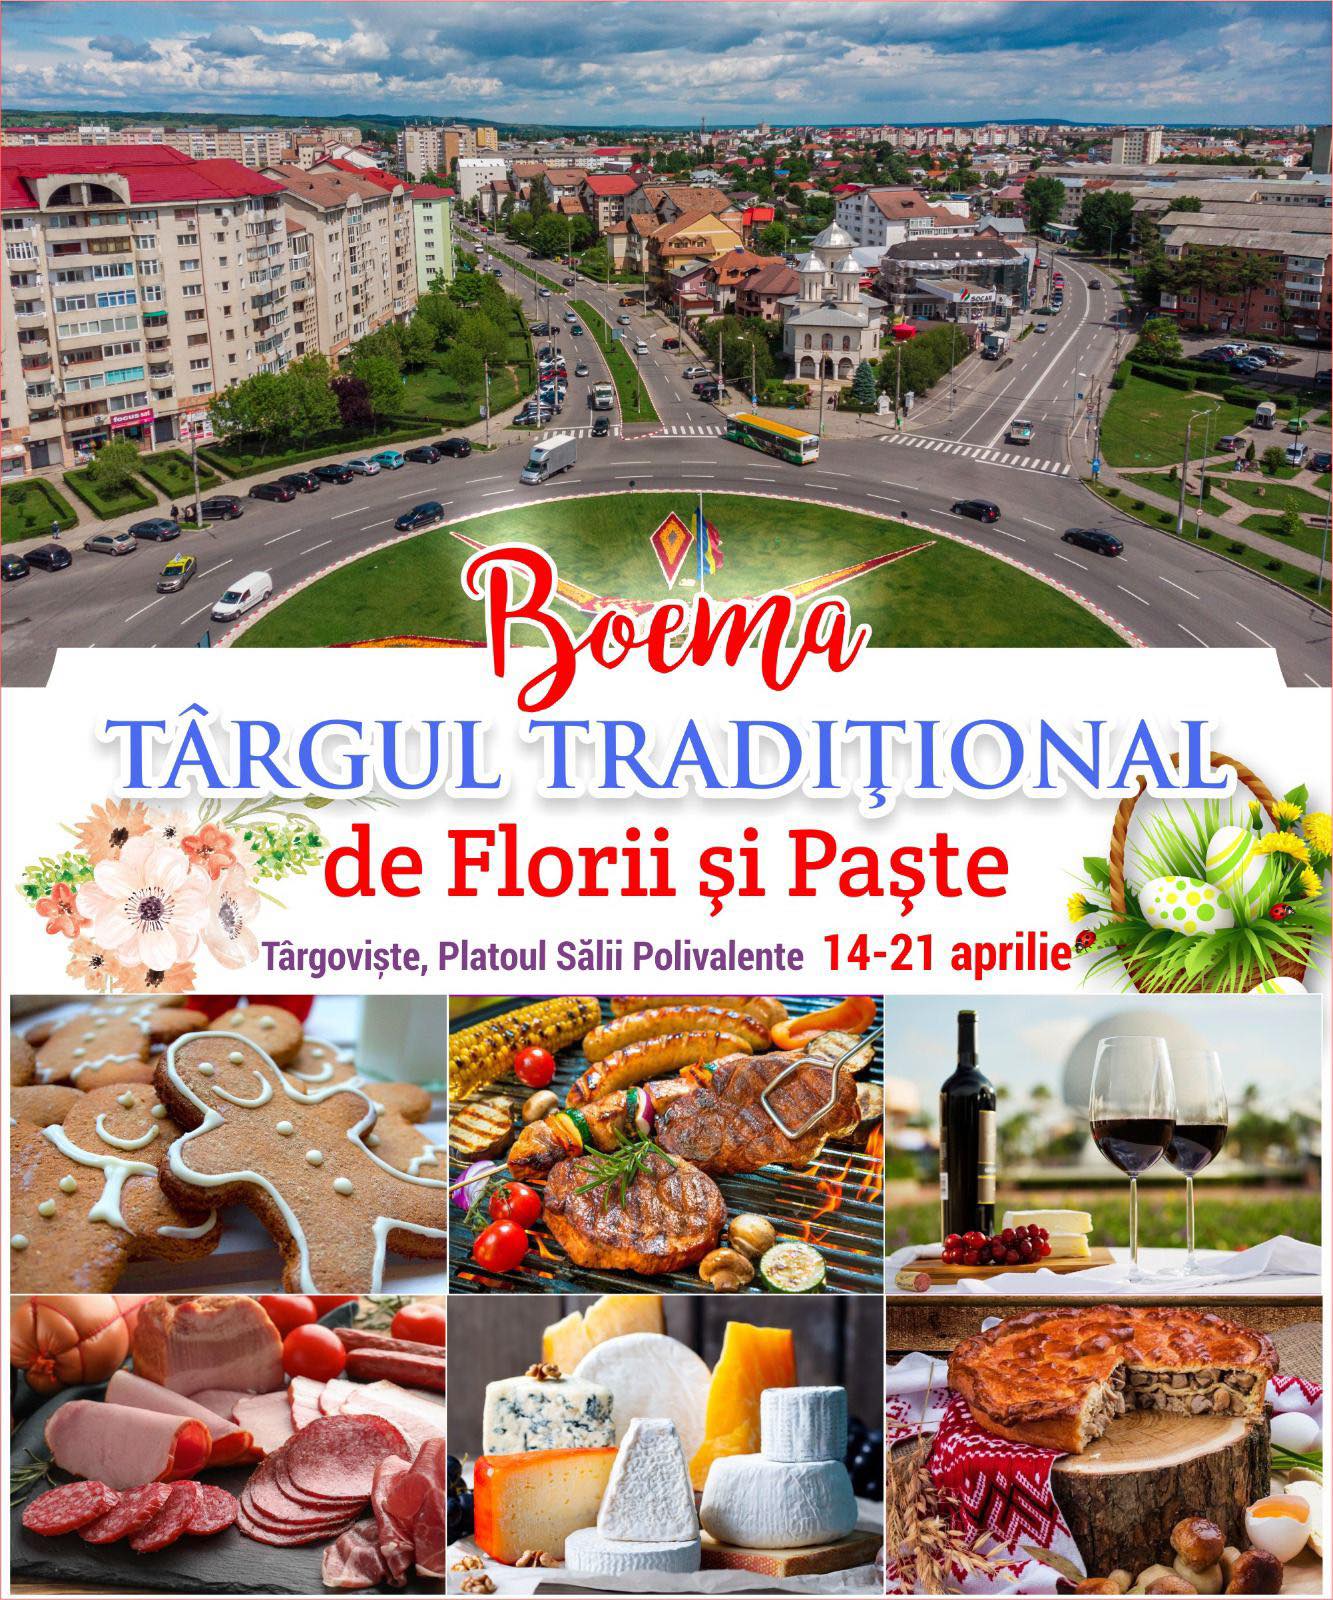 Veşti bune! Se încălzeşte vremea, vine şi Târgul de Florii şi Paşte, la Târgovişte! Nu rataţi cele mai delicioase produse tradiţionale!